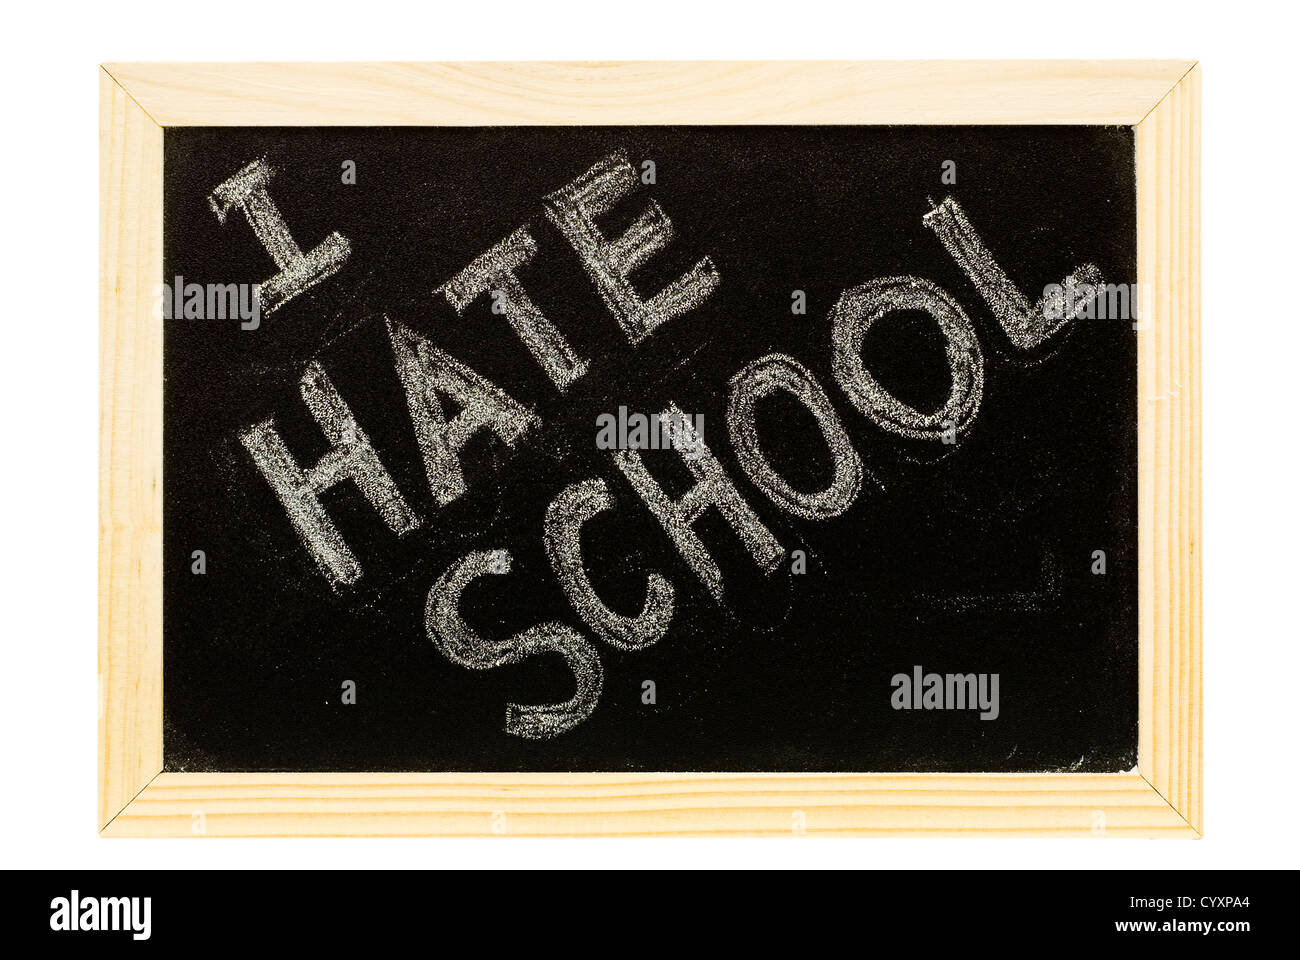 It is a blackboard written 'I hate school' slogan. Stock Photo